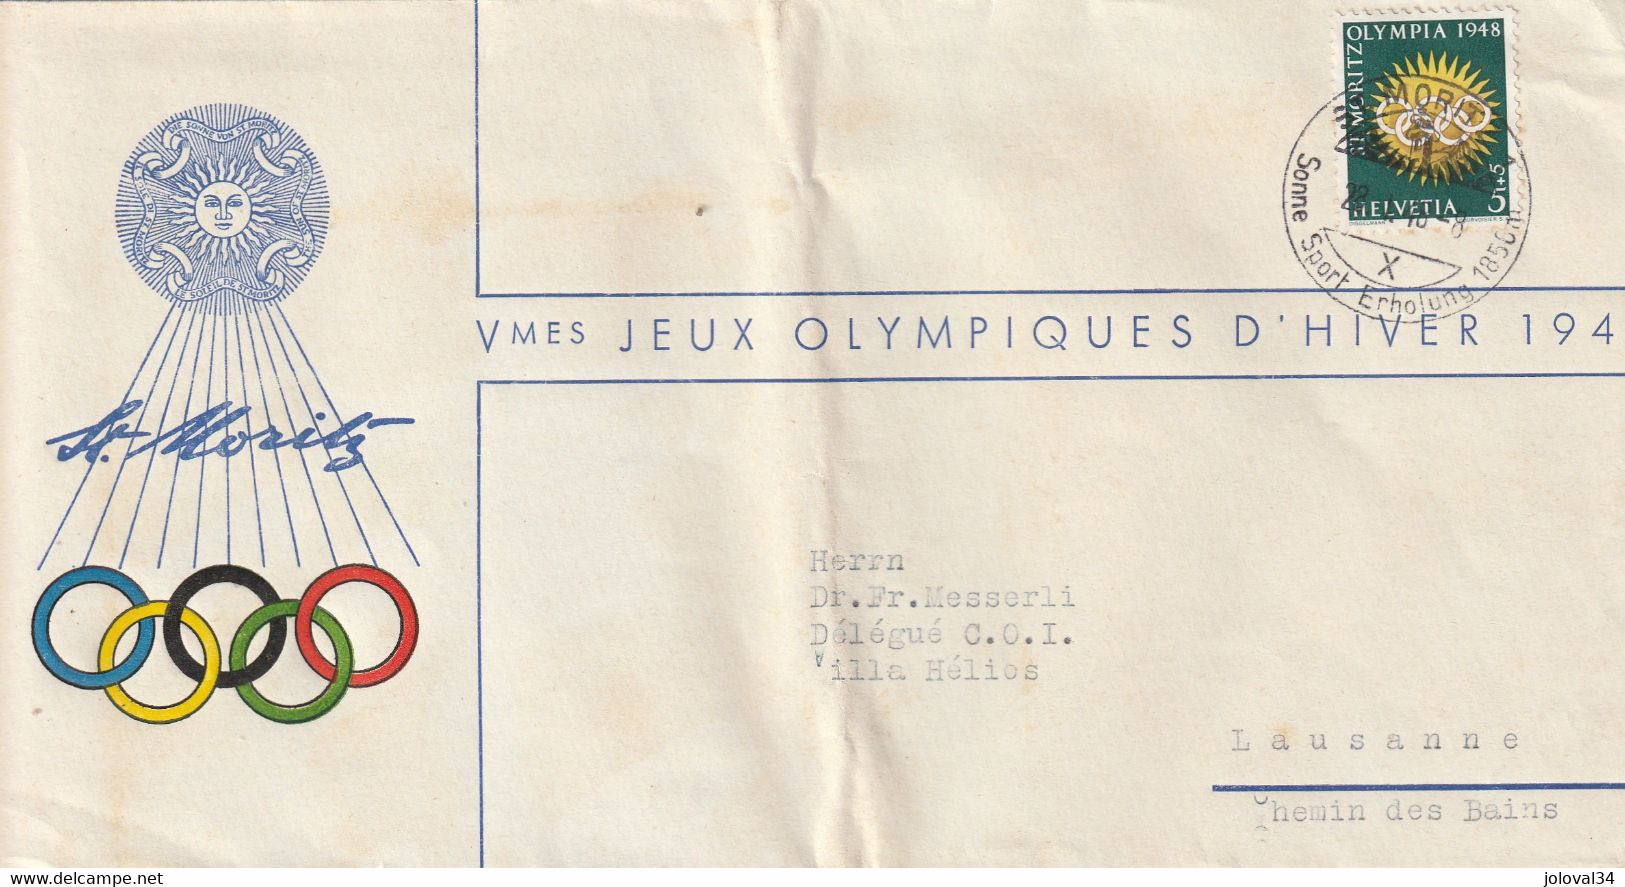 Vè Jeux Olympiques  Hiver Cachet Illustré  ST MORITZ 28/4/1948 Pour Messerli Délégué COI Lausanne Suisse Pli Hors Timbre - Hiver 1948: St-Moritz